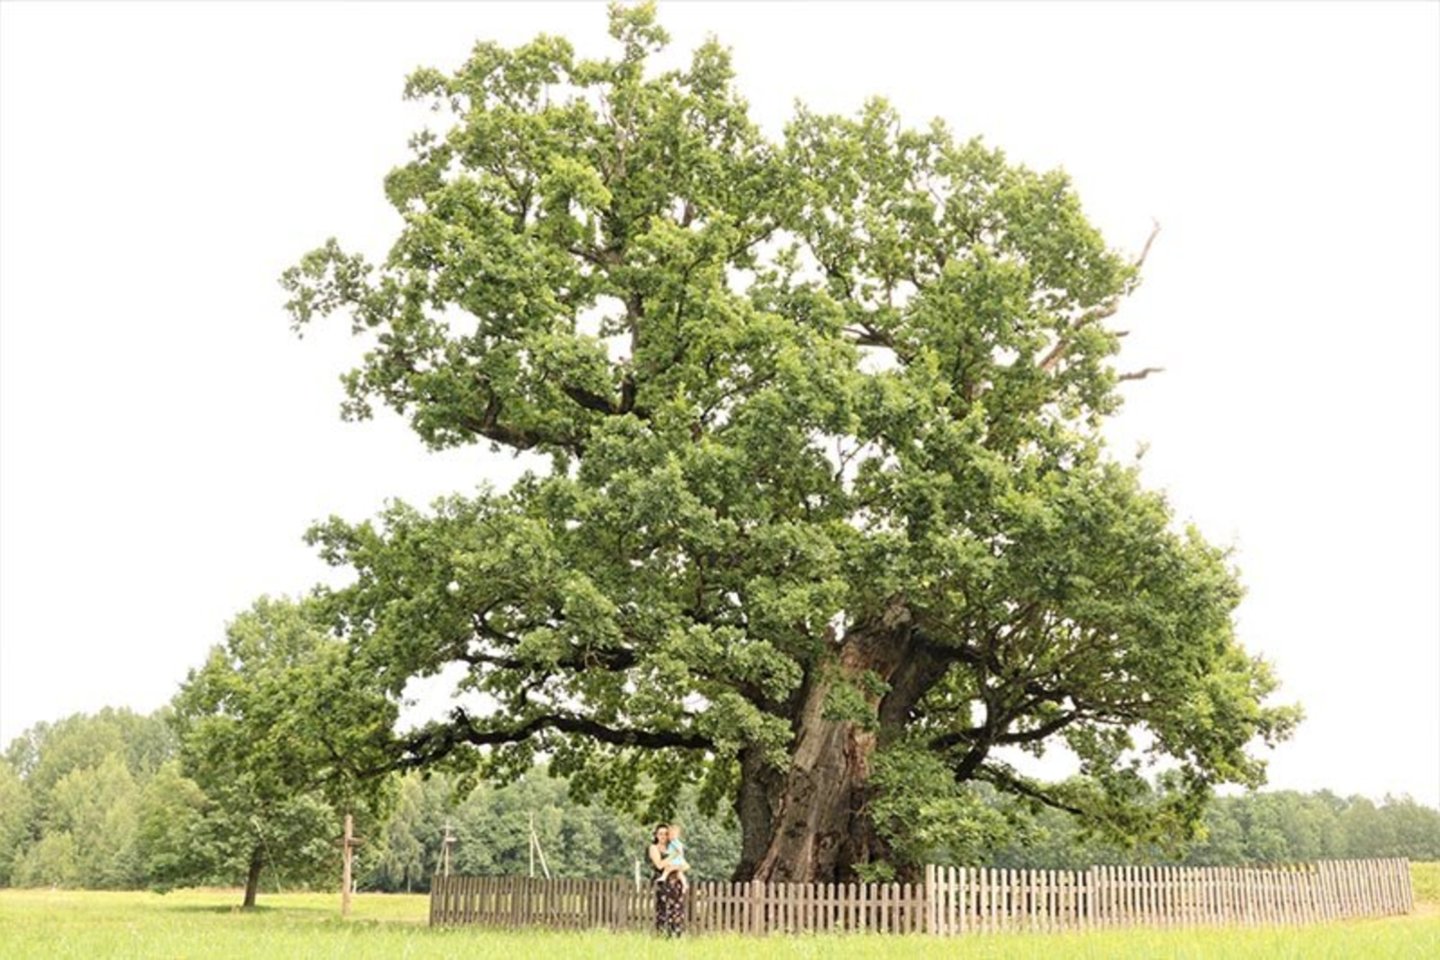  Mingėlos ąžuolas. Kalbama, kad jam – 600-700 metų. Šis medis apipintas legendomis apie sergančio senelio aplankyti išėjusį ir vilkų sudraskytą berniuką bei kirvį pakėlusio vyro šmėklą.